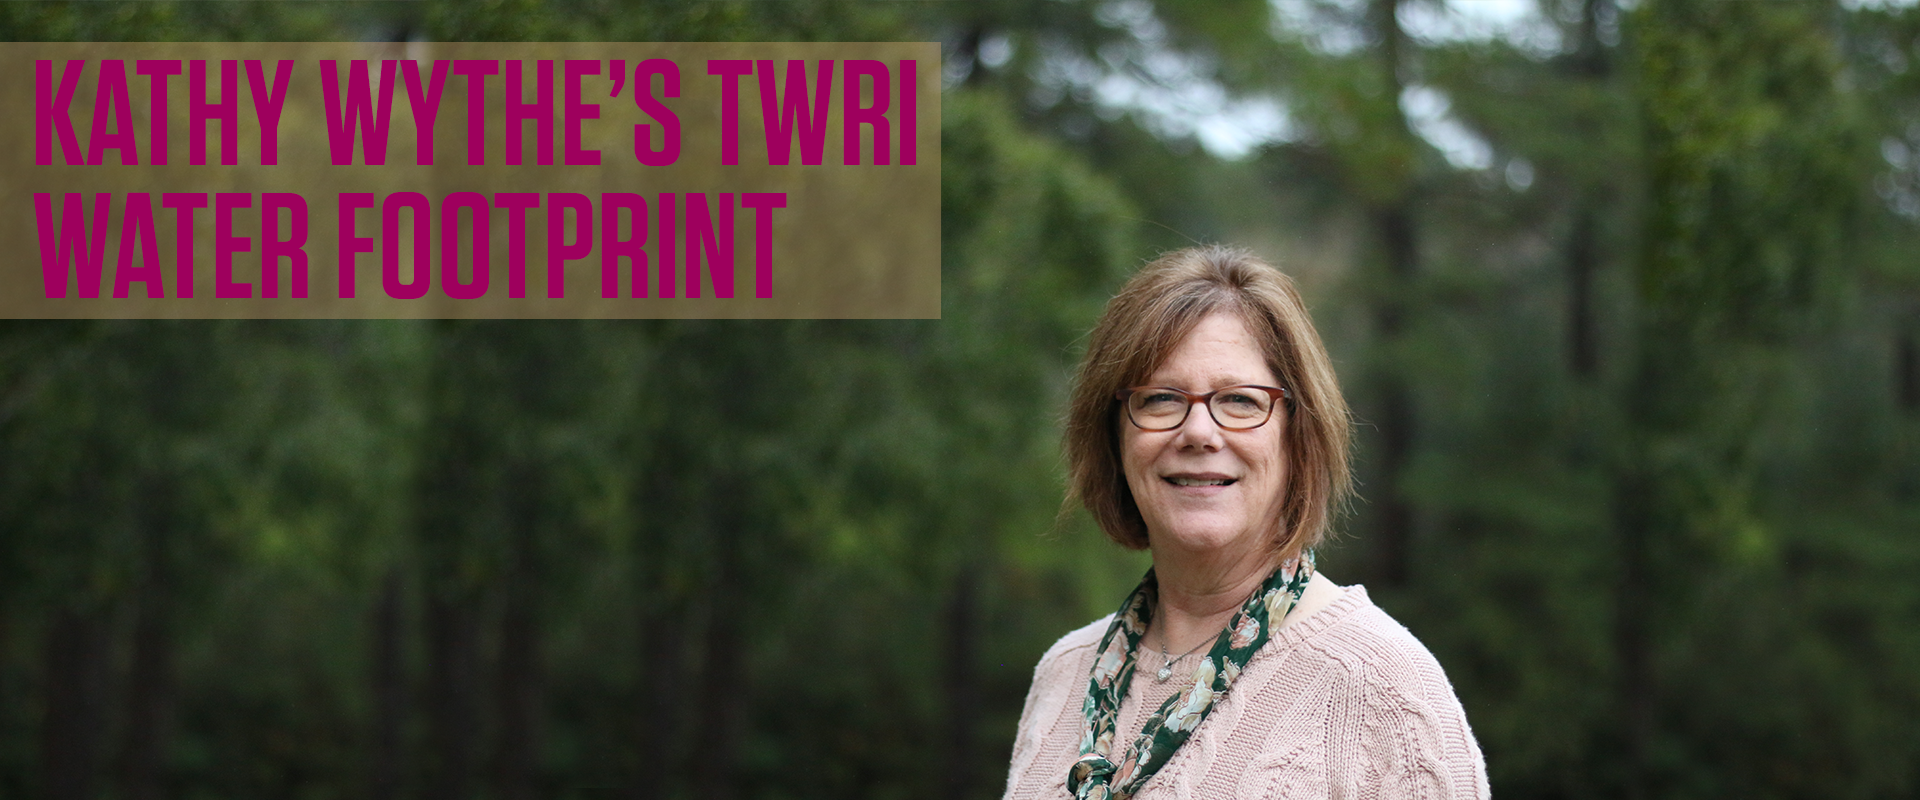 Kathy Wythe's TWRI Water Footprint